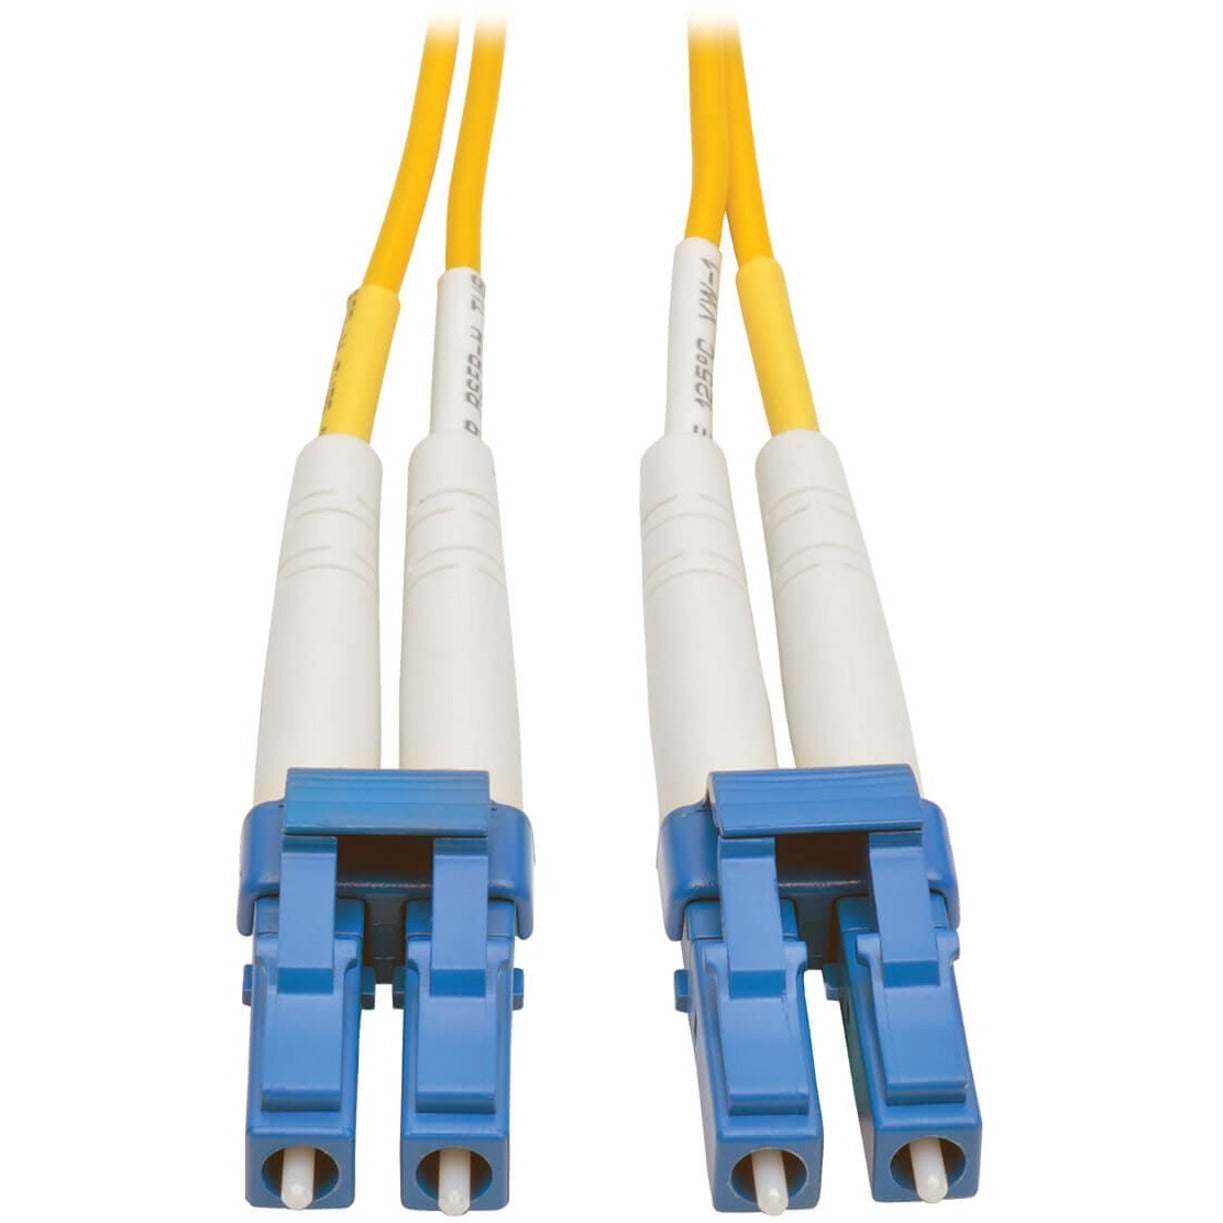 Tripp Lite N370-01M Fiber Optic Duplex Patch Cable, 3.30 ft, Yellow, Lifetime Warranty